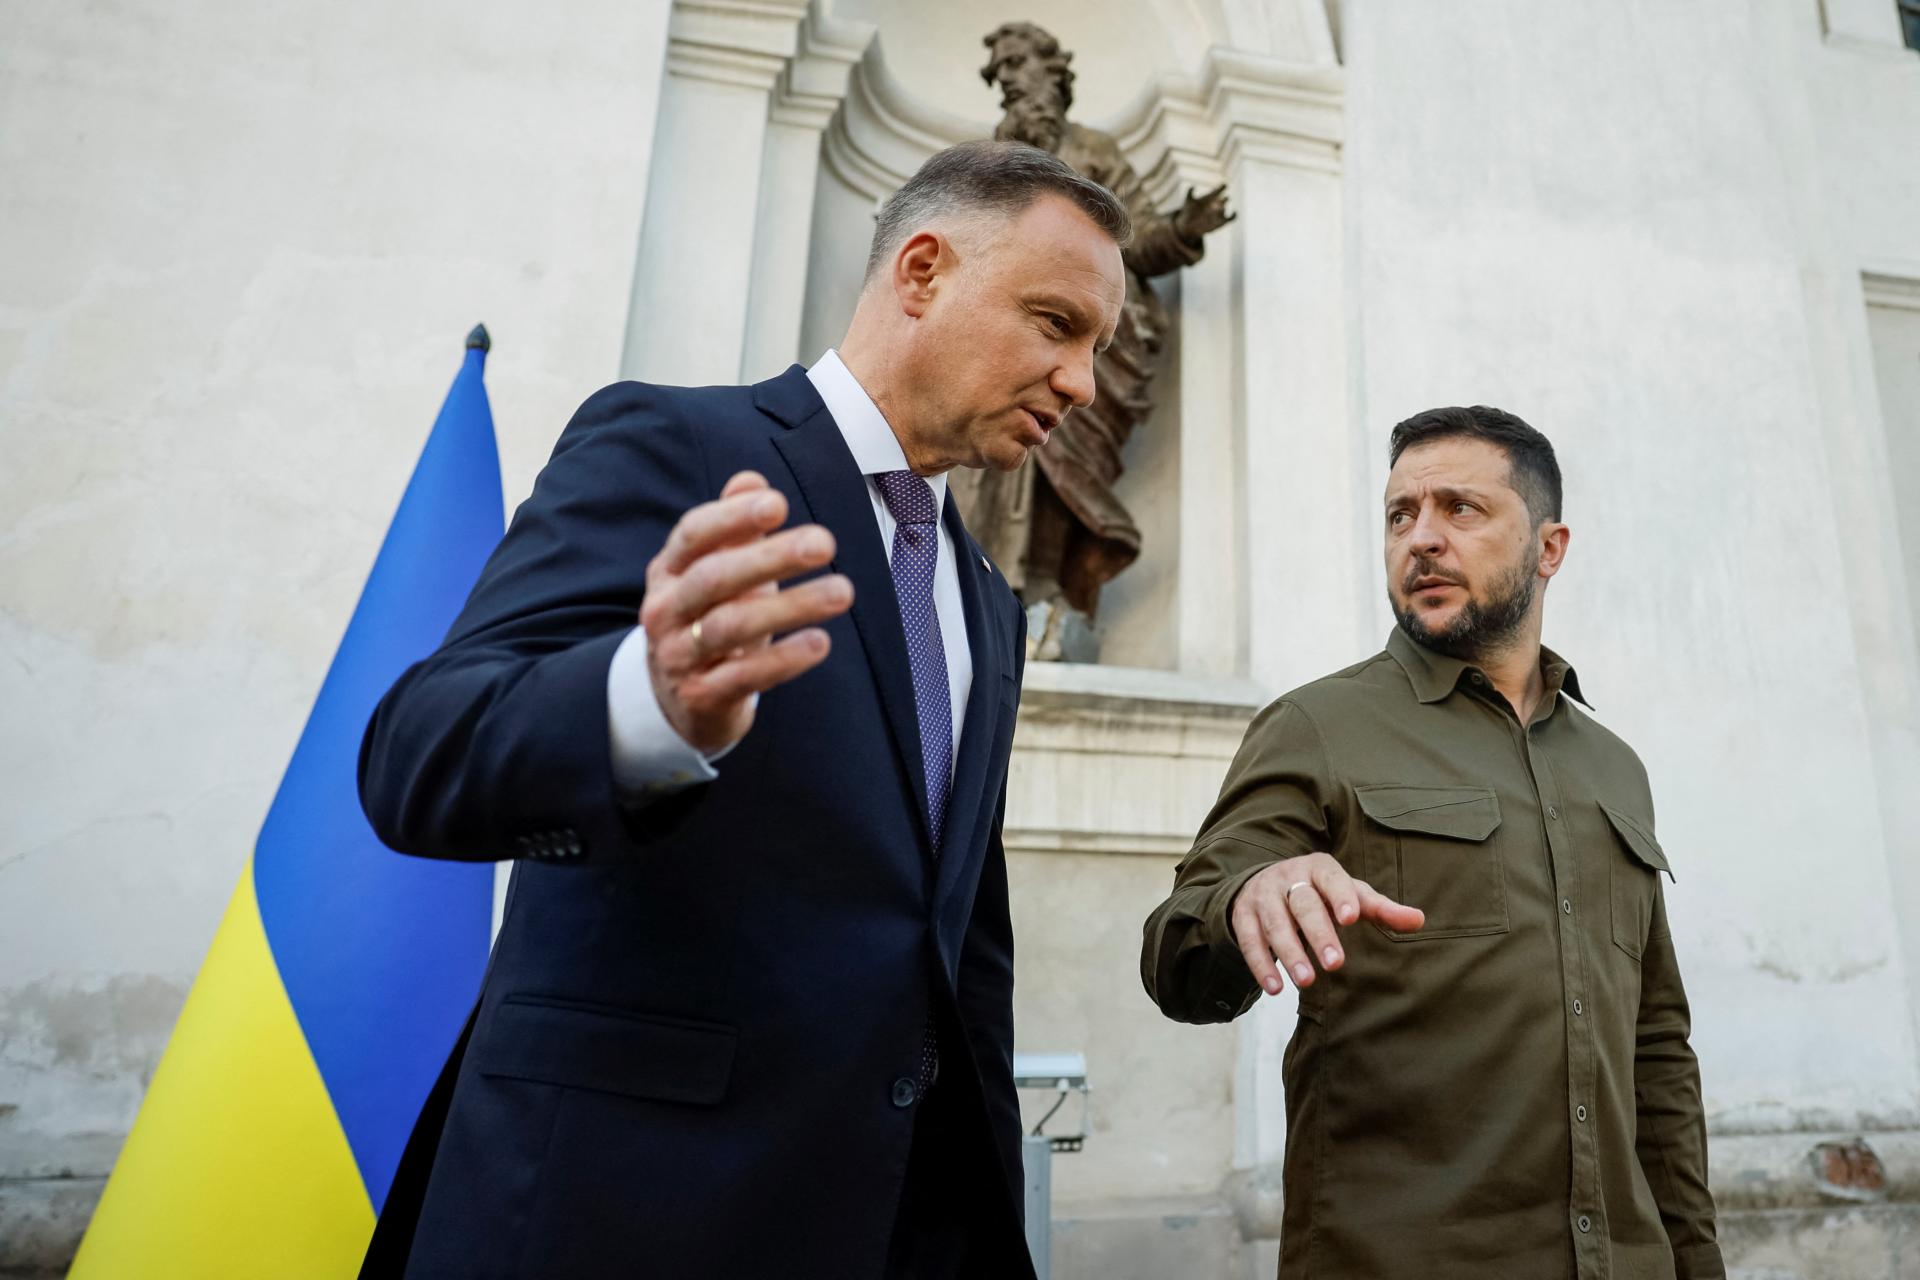 Spor medzi spojencami. Ukrajina si predvolala poľského veľvyslanca, Kyjev dráždia vyjadrenia Dudovho poradcu